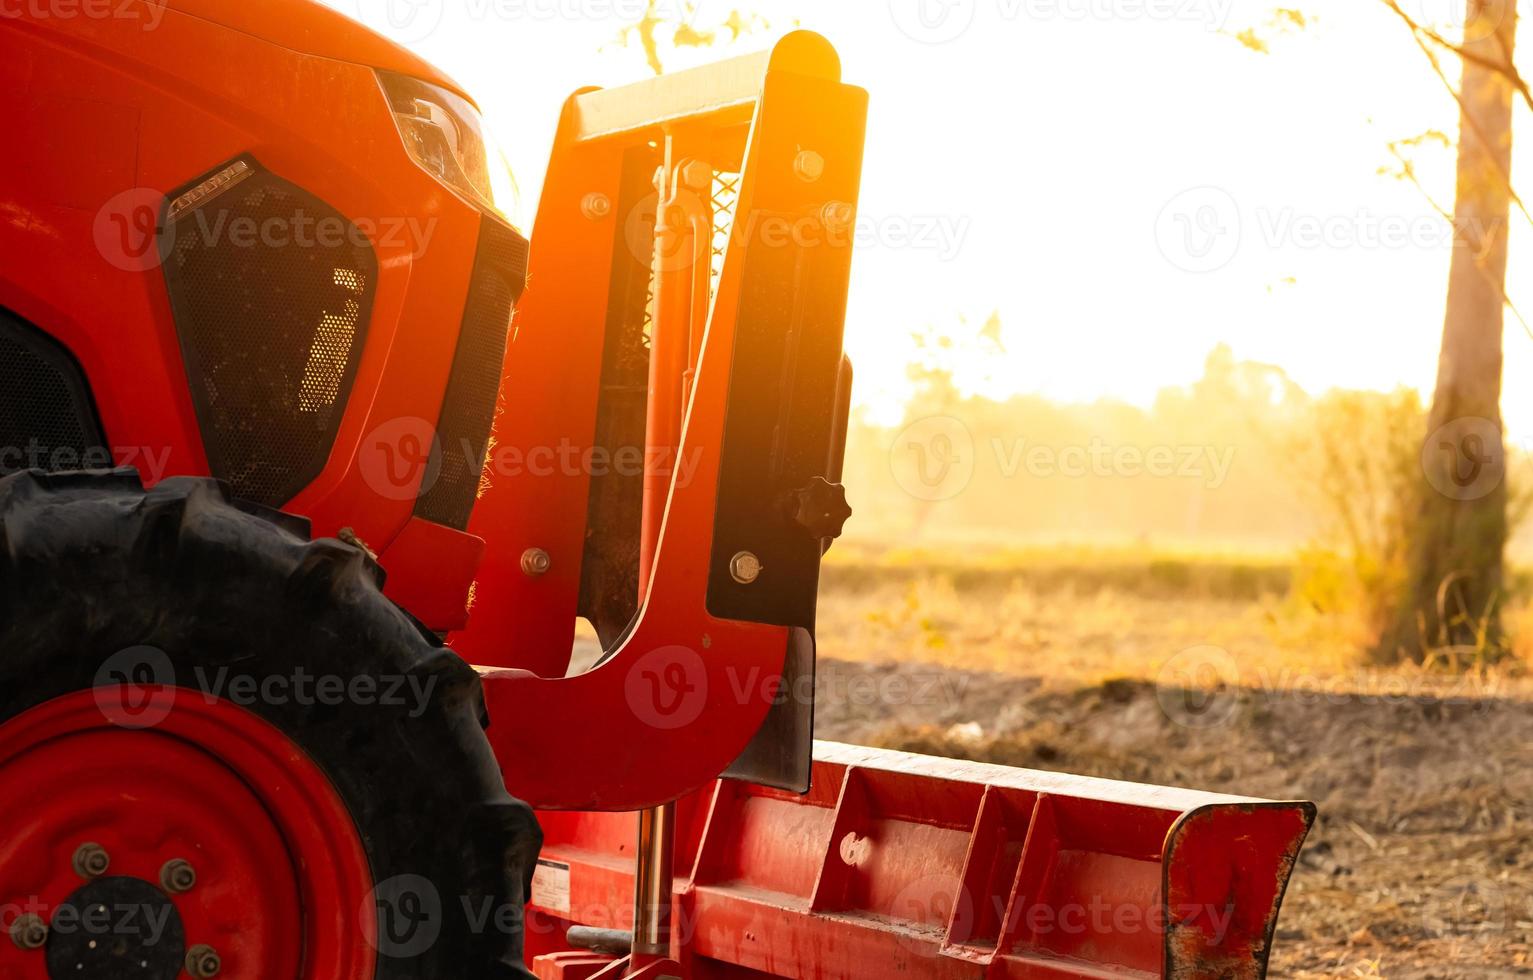 oranje tractor geparkeerd op rijstboerderij in de zomerochtend met zonlicht. landbouwmachines in landbouwboerderij. slim landbouwconcept. voertuig in boerderij. arbeidsbesparende machines. uitrusting voor plantage foto